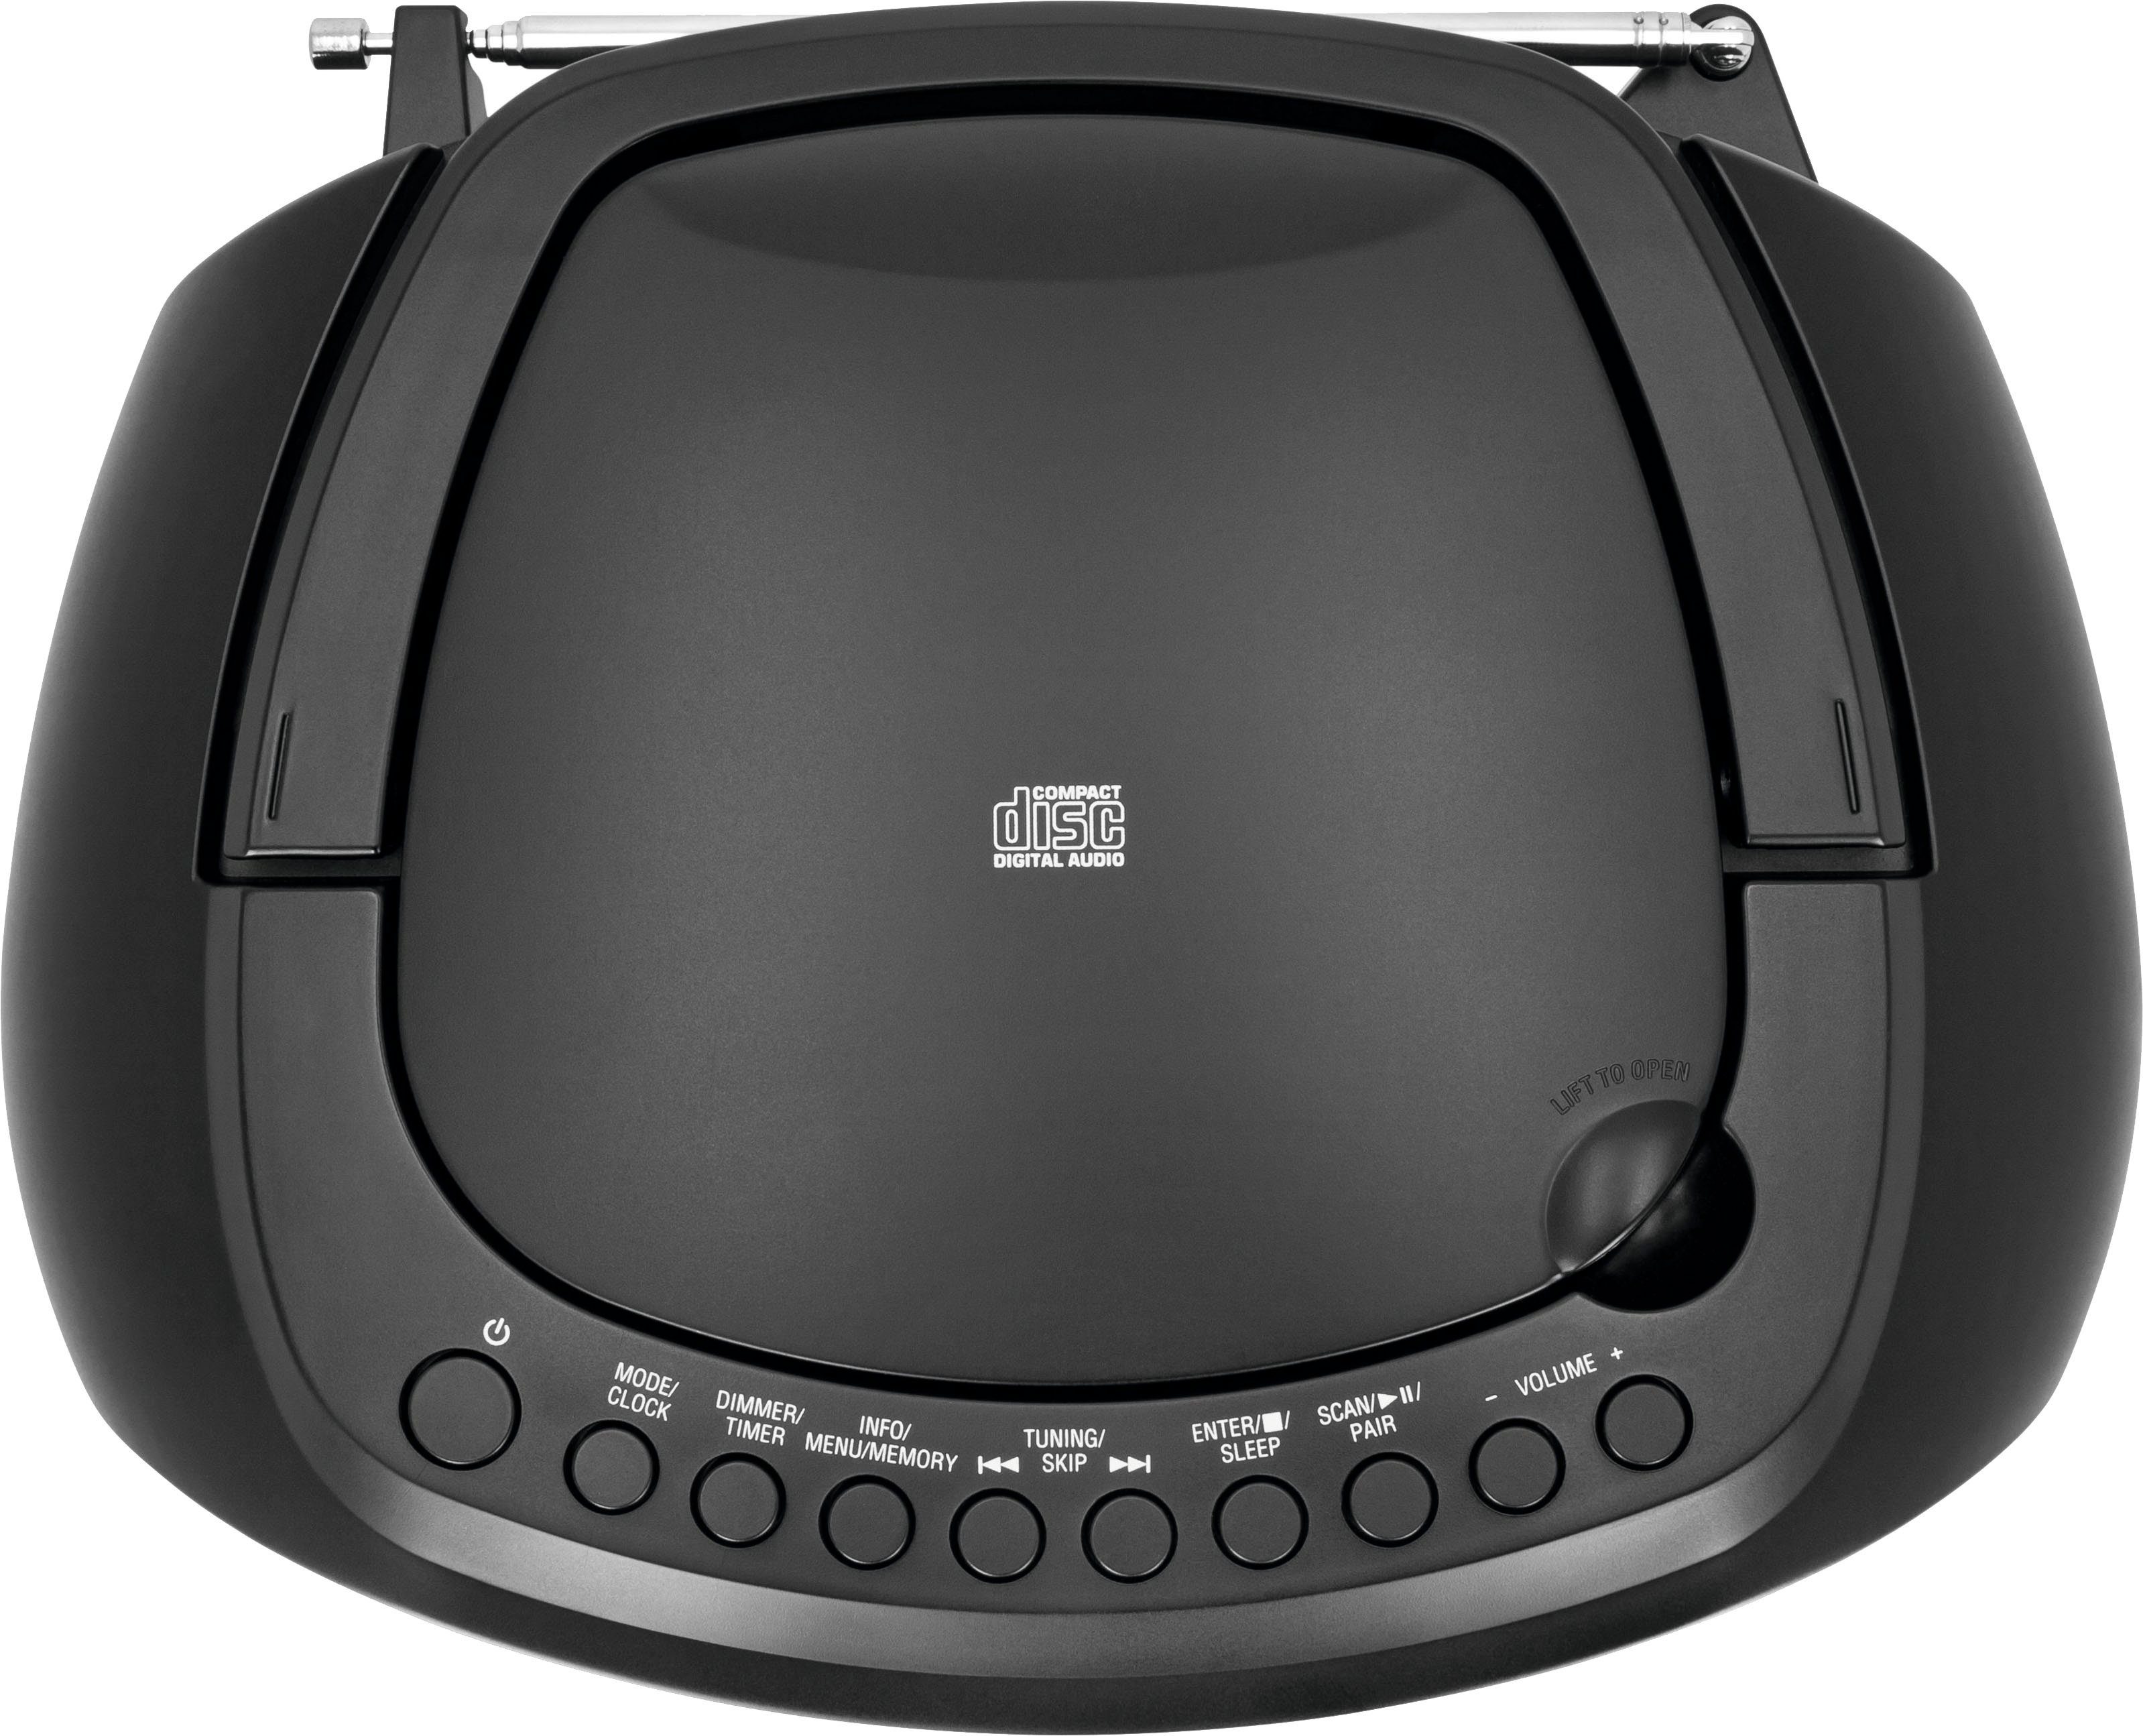 TechniSat mit (Digitalradio 1990 (DAB), Boombox möglich) schwarz Batteriebetrieb UKW, USB, FM-Tuner, Stereo- DAB+, Bluetooth, CD-Player, Digitradio